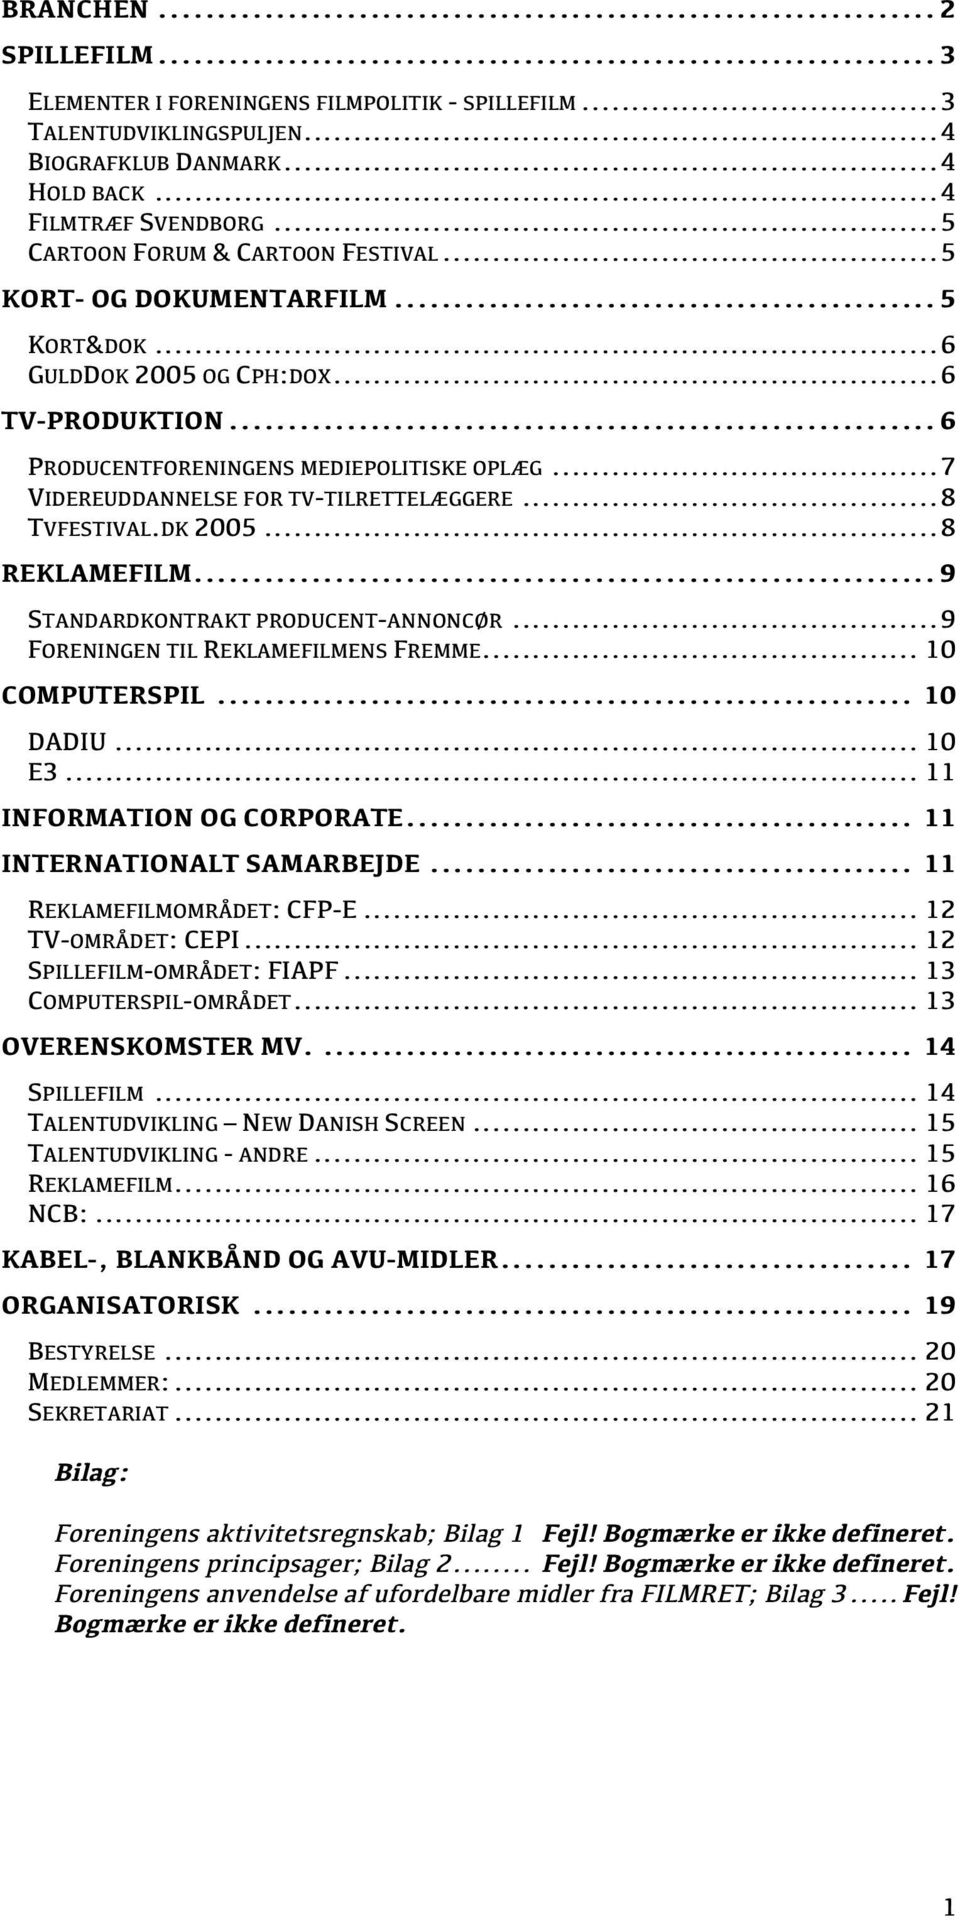 .. 7 VIDEREUDDANNELSE FOR TV-TILRETTELÆGGERE... 8 TVFESTIVAL.DK 2005... 8 REKLAMEFILM... 9 STANDARDKONTRAKT PRODUCENT-ANNONCØR... 9 FORENINGEN TIL REKLAMEFILMENS FREMME... 10 COMPUTERSPIL... 10 DADIU.